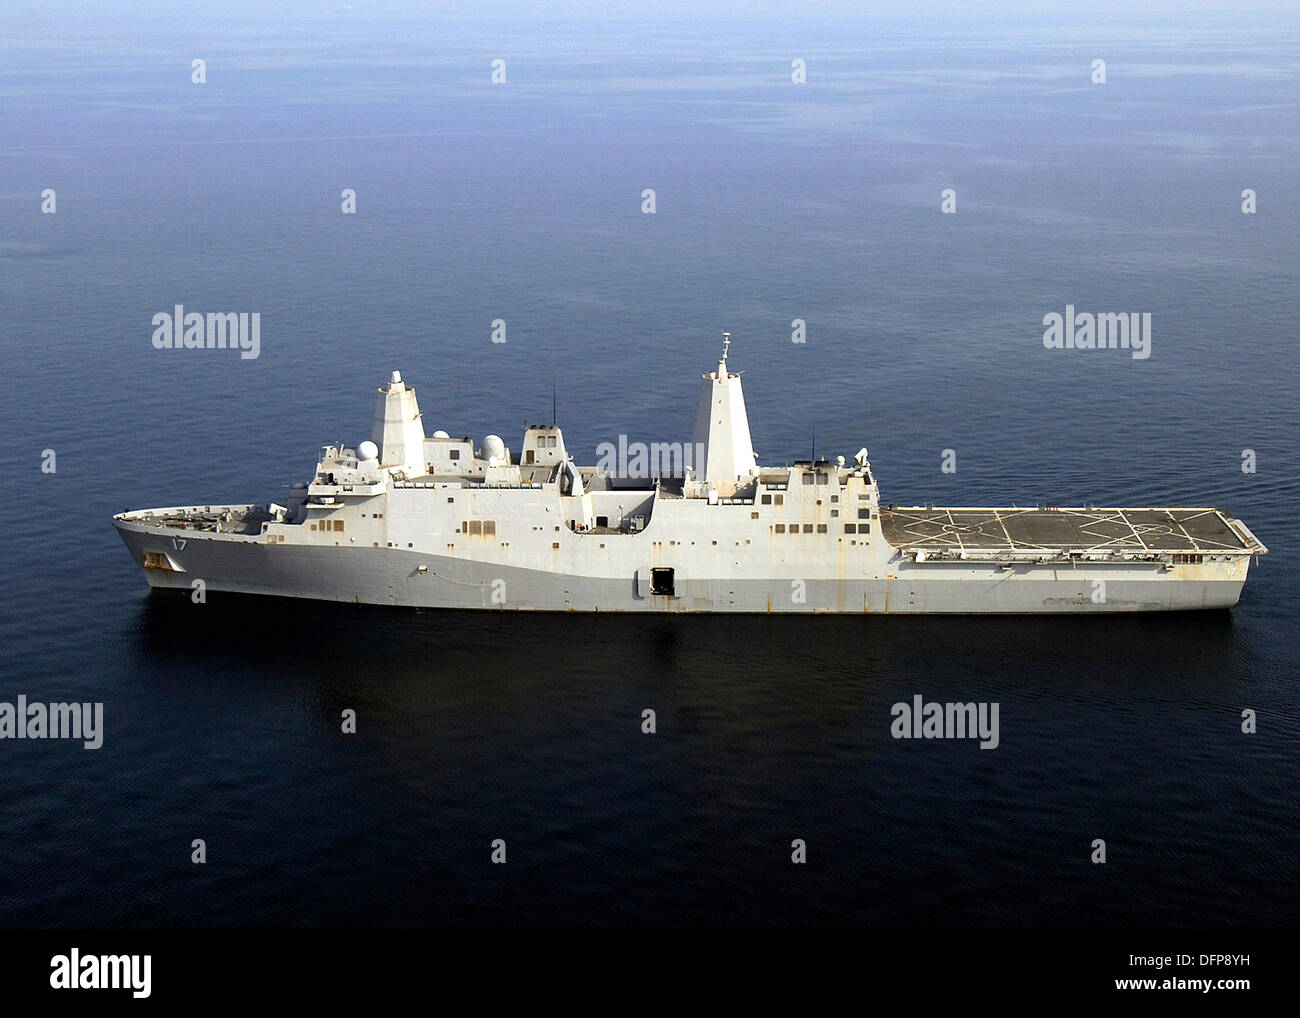 L'US Navy USS San Antonio de transport amphibie Navire dock au cours de l'exploitation le 25 octobre 2008 dans le golfe Persique. Abou Anas al Libi terroriste est actuellement détenu dans le San Antonio après sa capture le 5 octobre 2013 en Libye. Banque D'Images